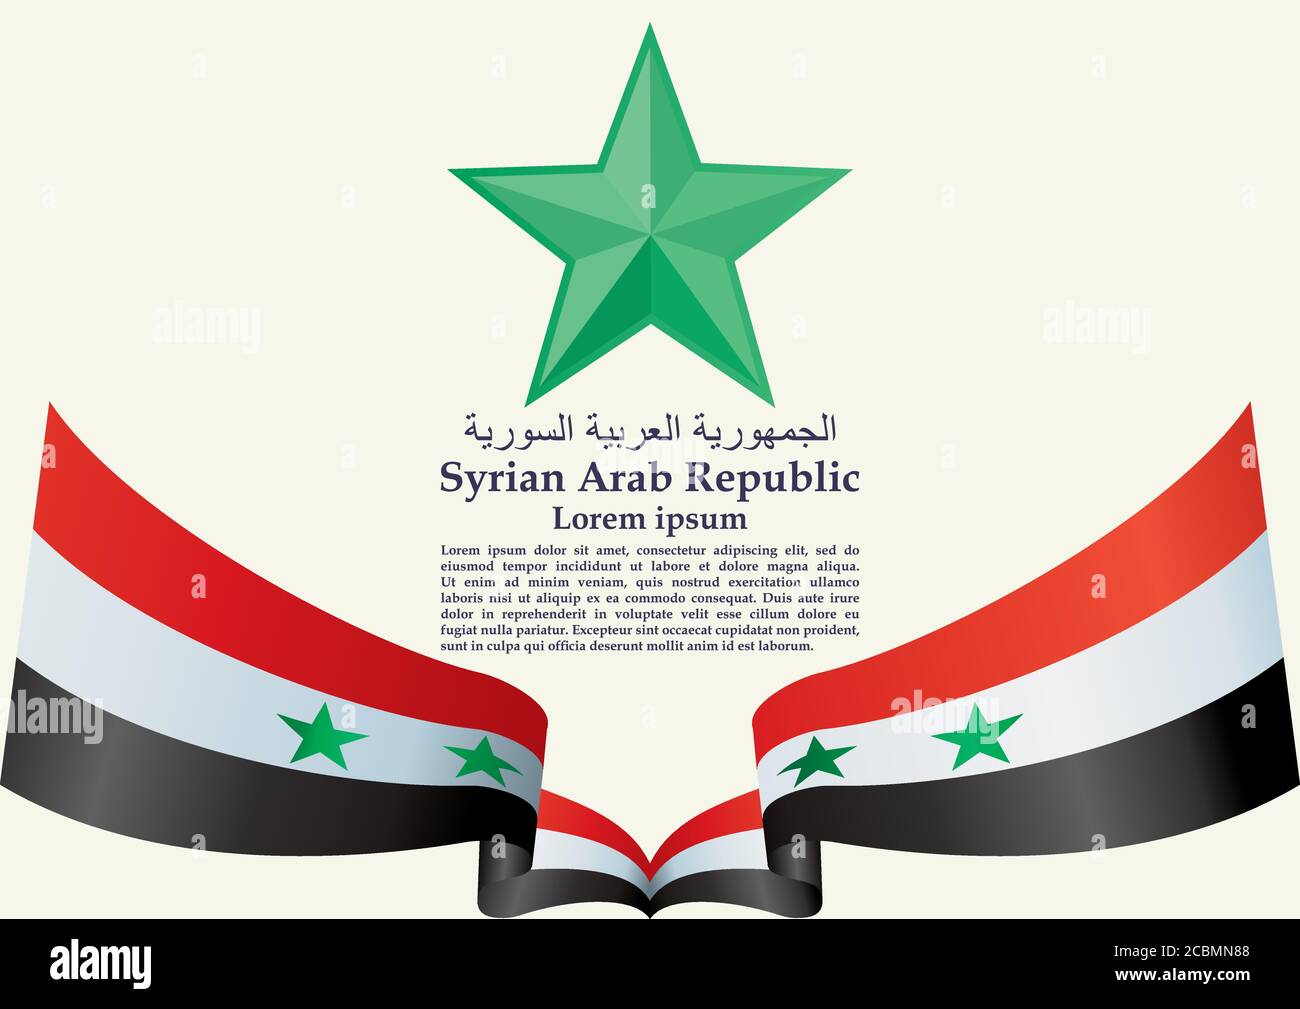 Flagge  Syrien -schwarzes Design